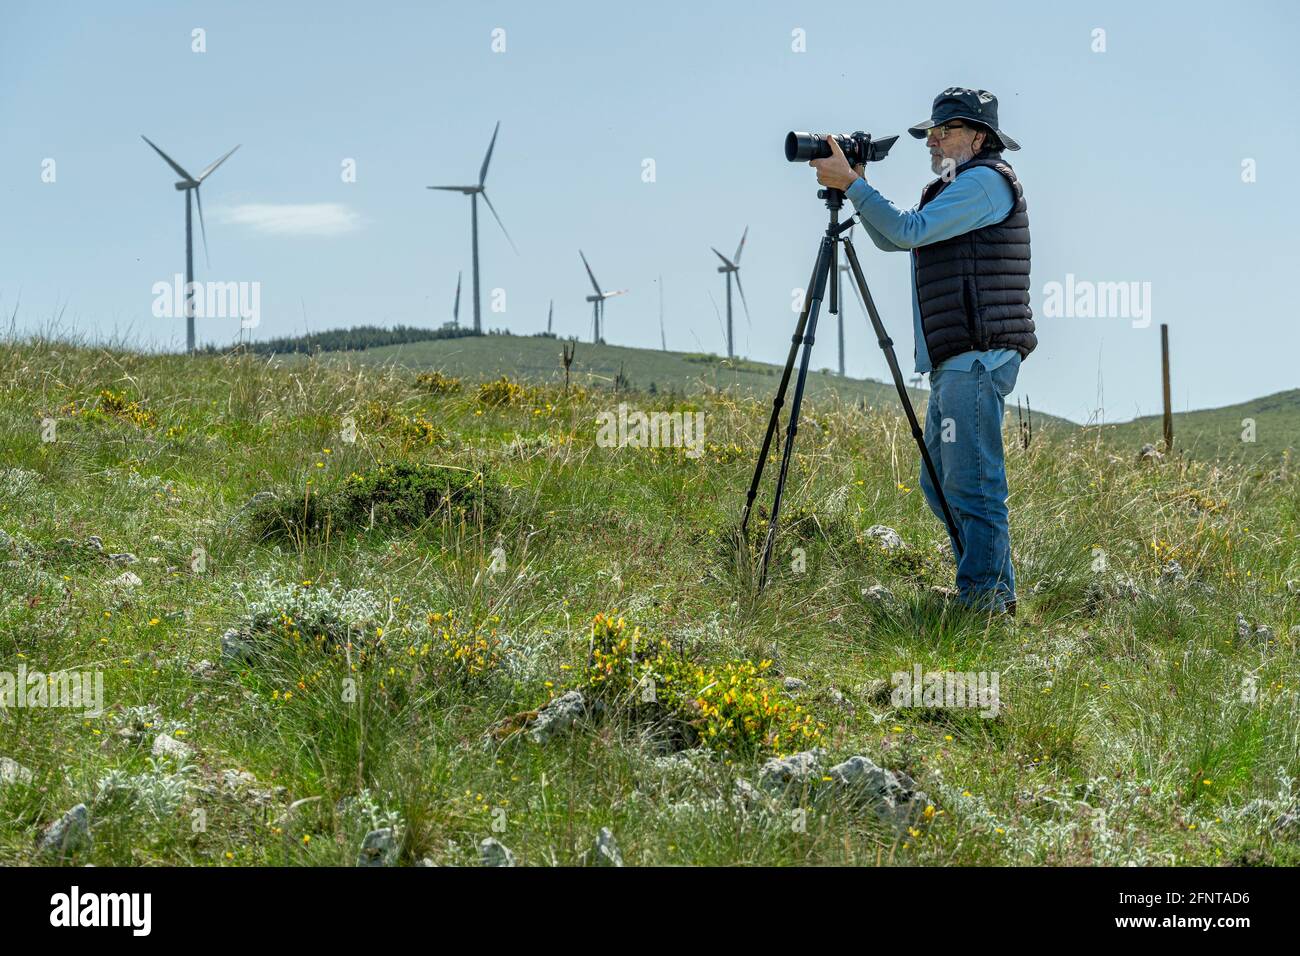 Homme âgé utilisant une nouvelle technologie. Appareil photo sur trépied, homme habillé décontracté. Éoliennes en arrière-plan. Abruzzes, Italie, Europe Banque D'Images